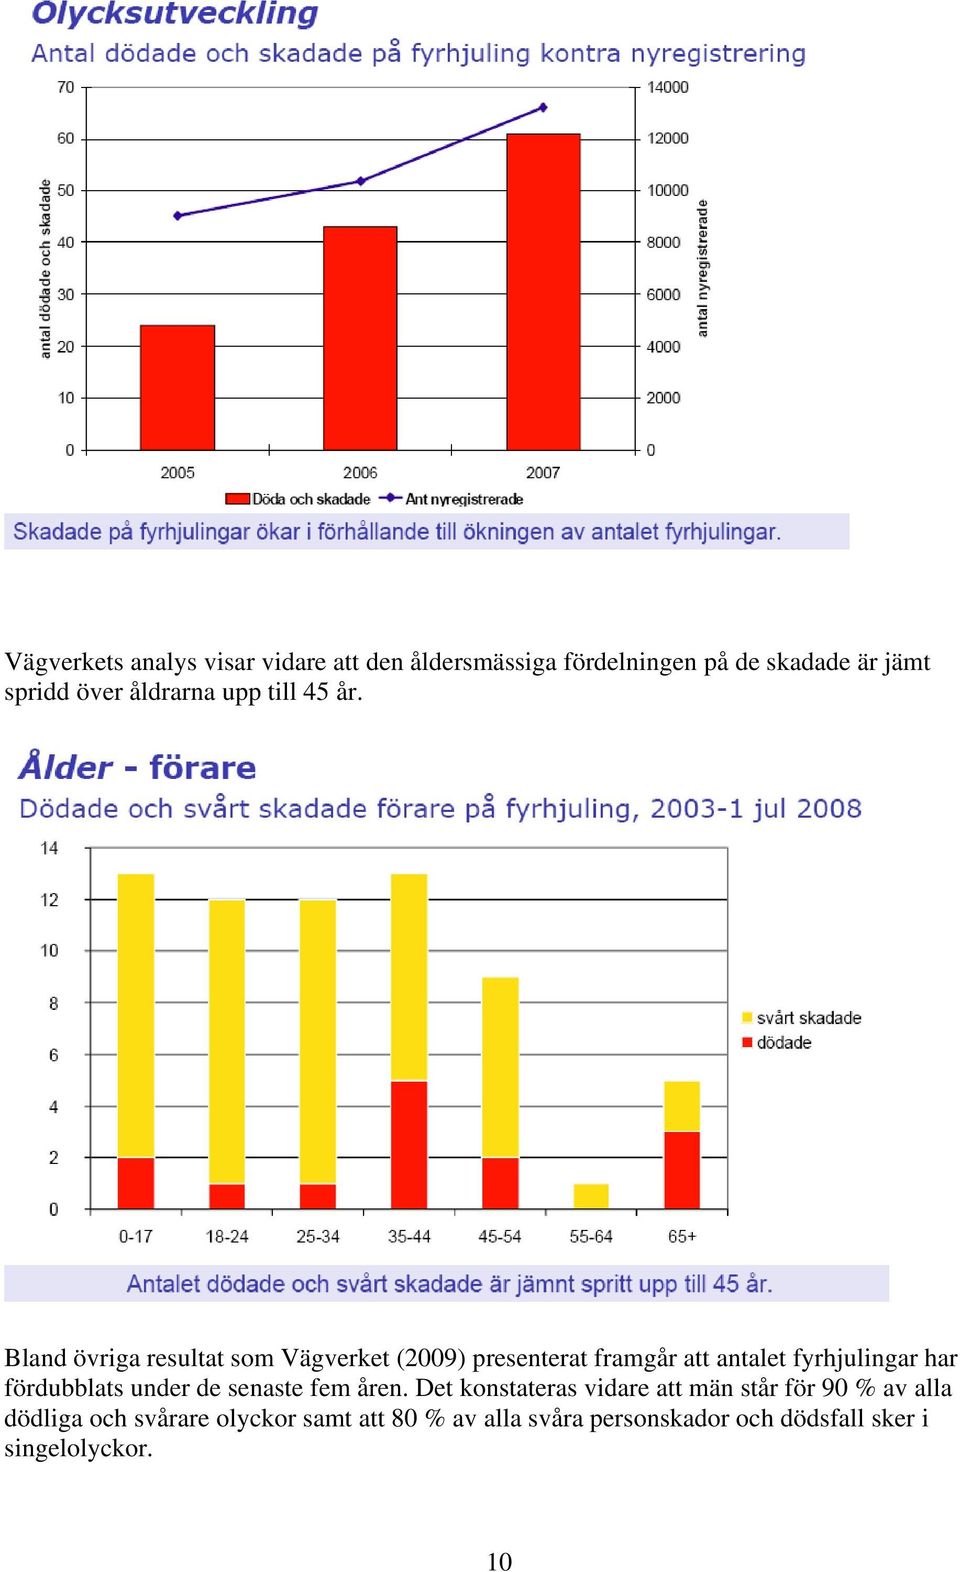 Bland övriga resultat som Vägverket (2009) presenterat framgår att antalet fyrhjulingar har fördubblats